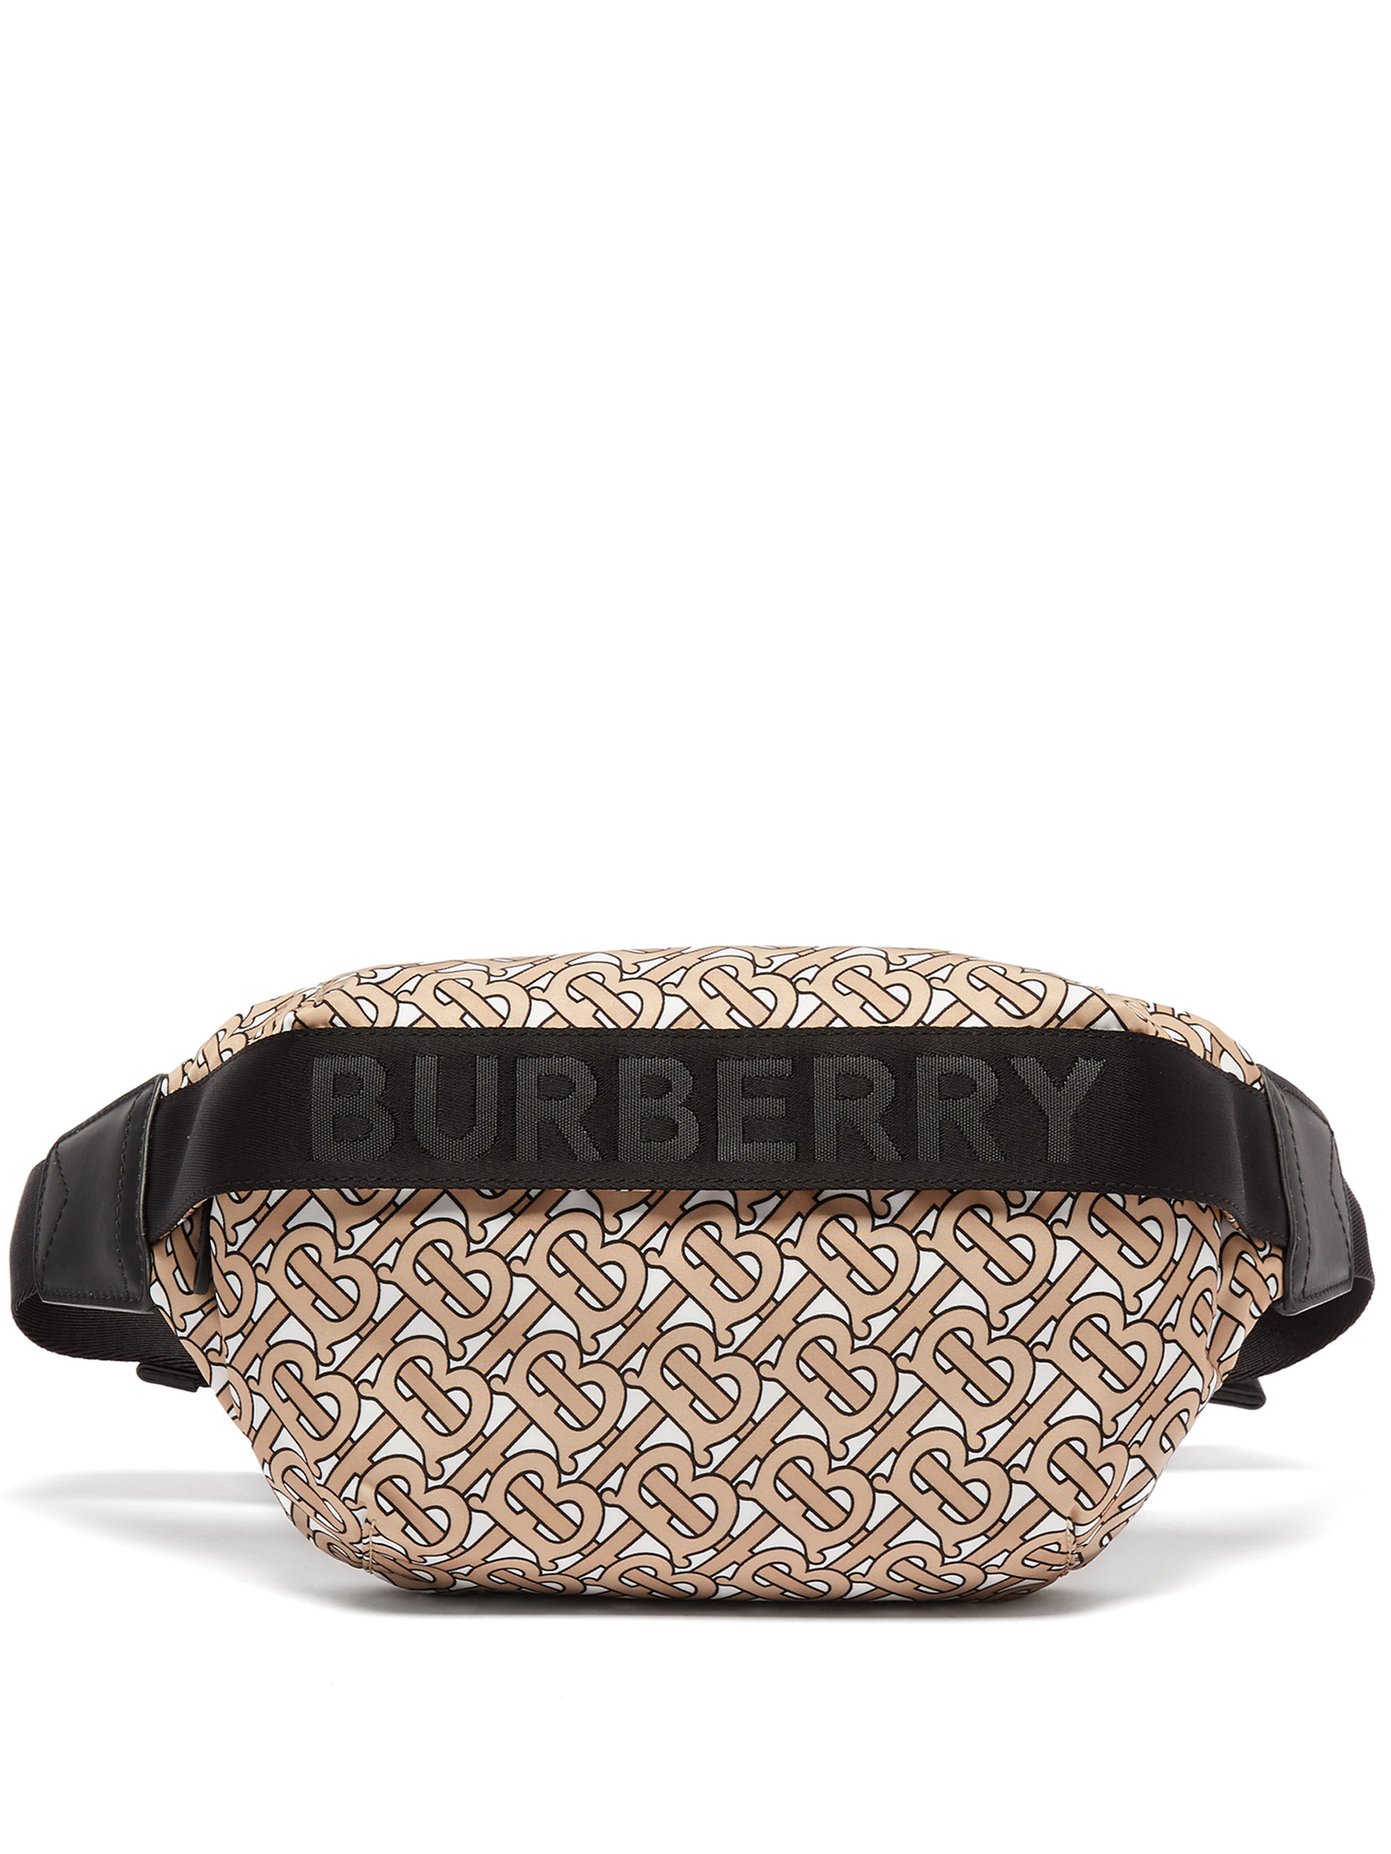 burberry belt bag men